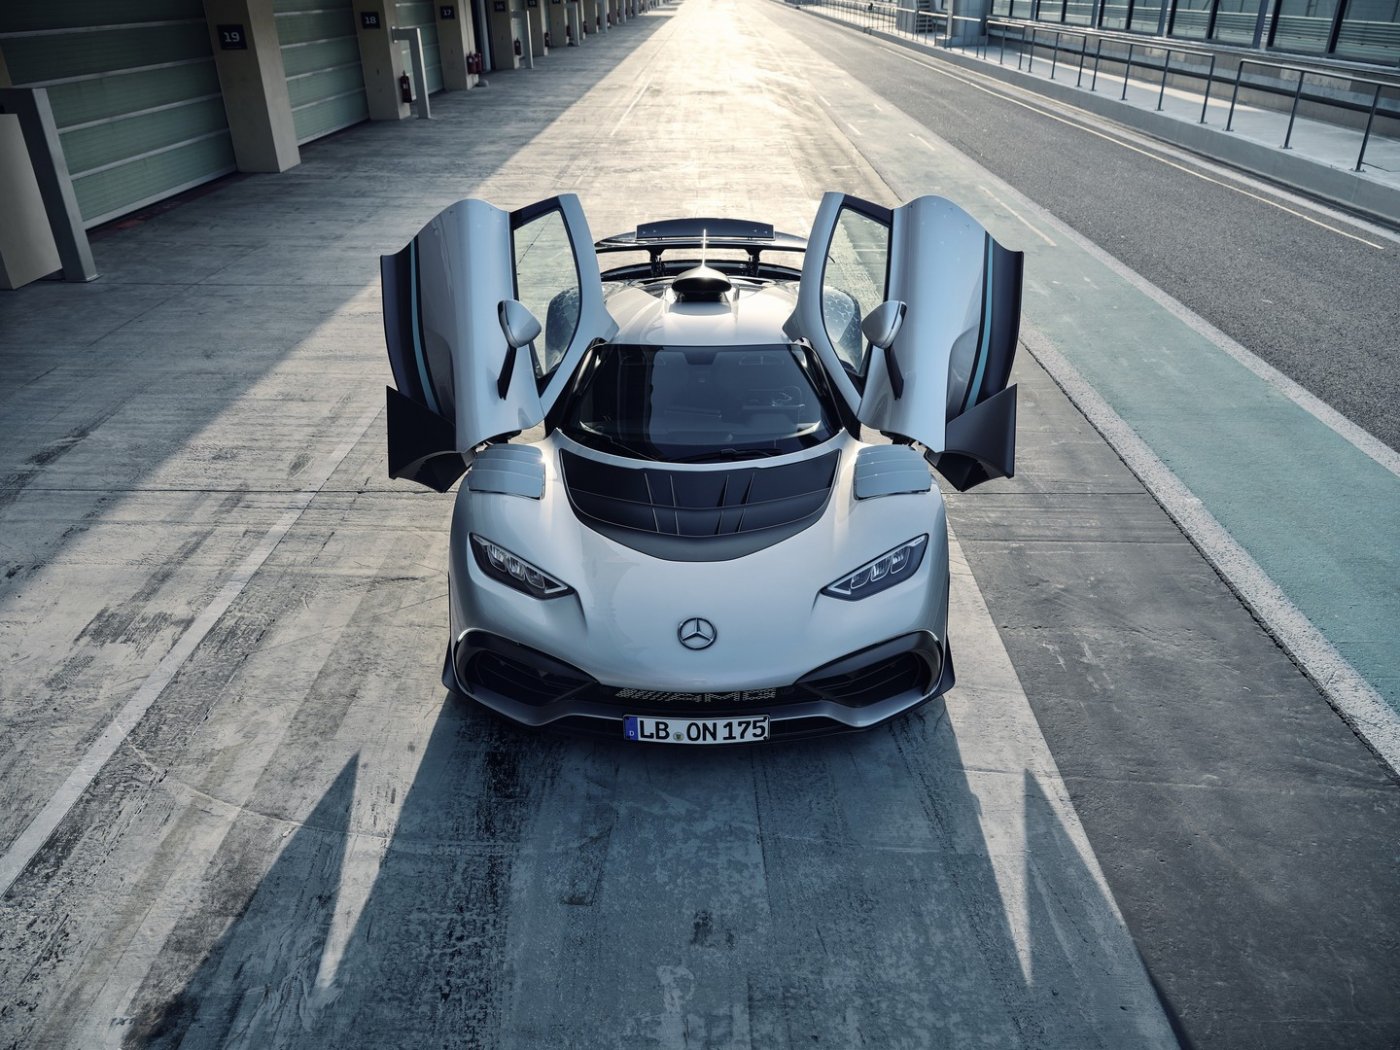 Luxusné auto? Už po nájazde 200 000 kilometrov náklady na údržbu prekonajú maloobchodnú cenu vozidla! Náklady na servis Mercedesu-AMG One môžu presiahnuť sumu neuveriteľných 850 000 eur!